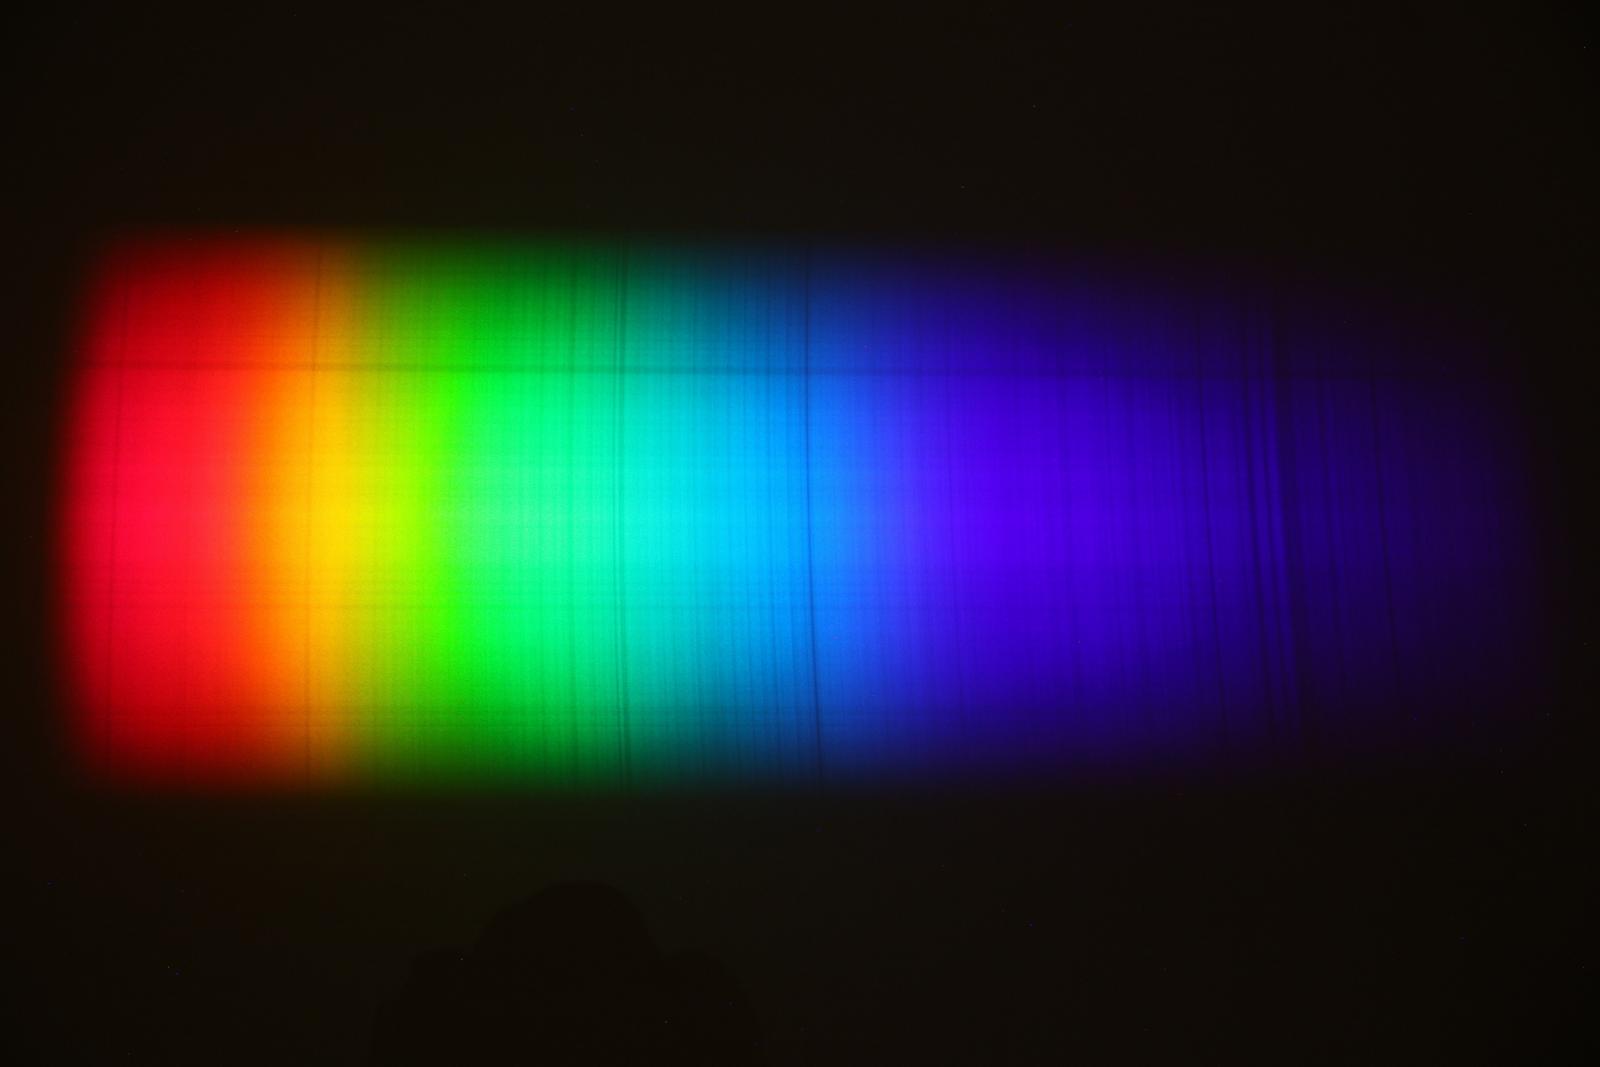 Spectrum via heliostaat